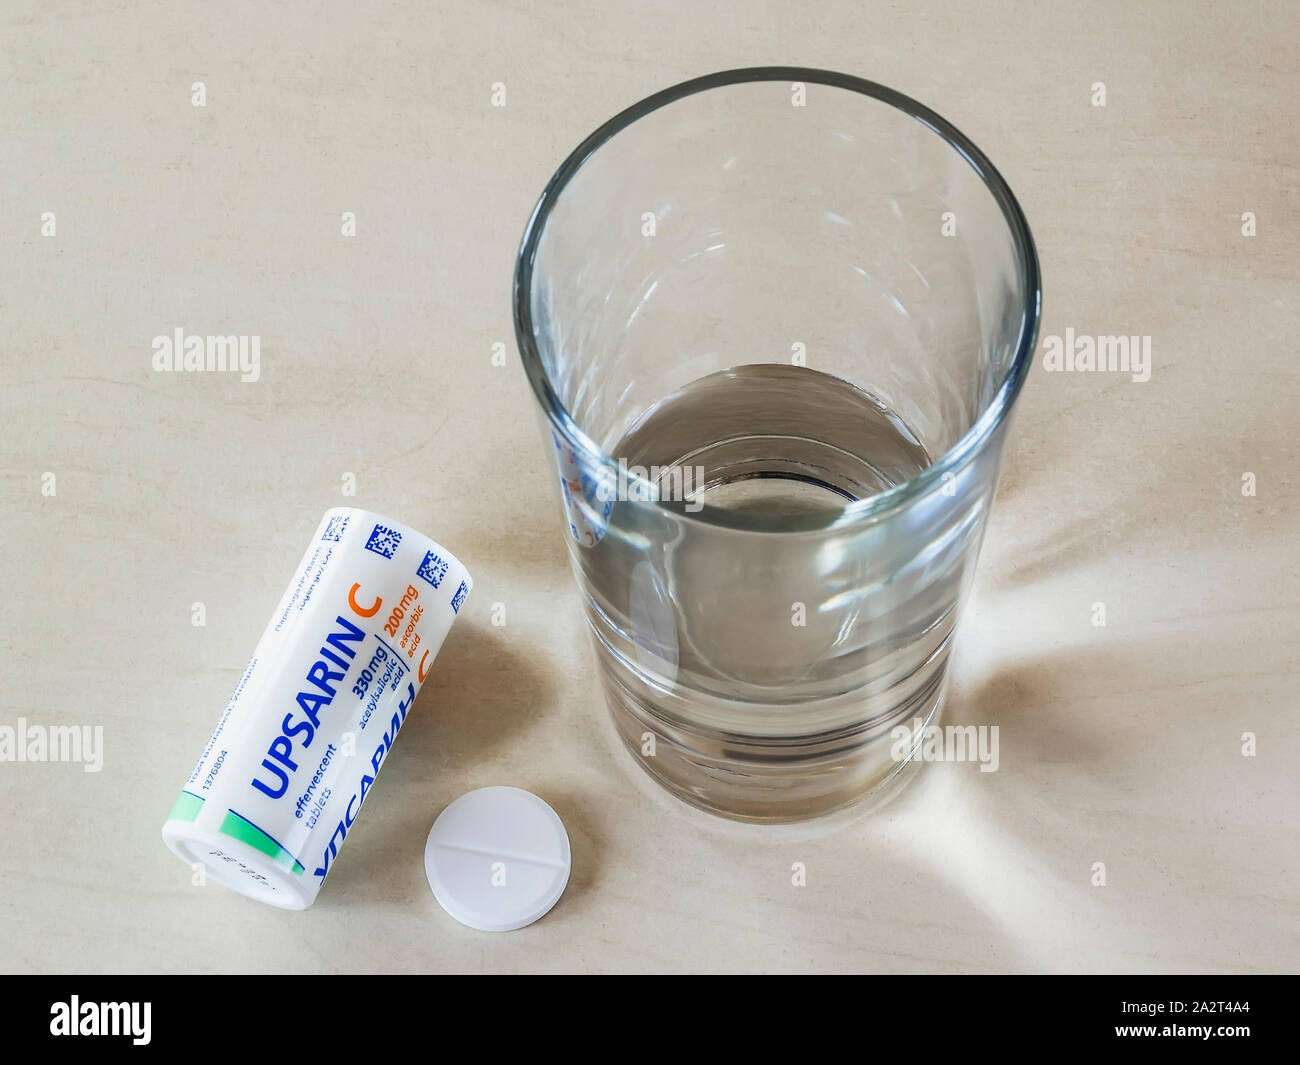 Varna, Bulgarien, Oktober 02, 2019. Blick von oben auf die UPSARIN C fiebersenkende Tabletten und ein Glas Wasser auf einem weißen Tisch. Löslichen Brausetabletten Aspirin. Stockfoto